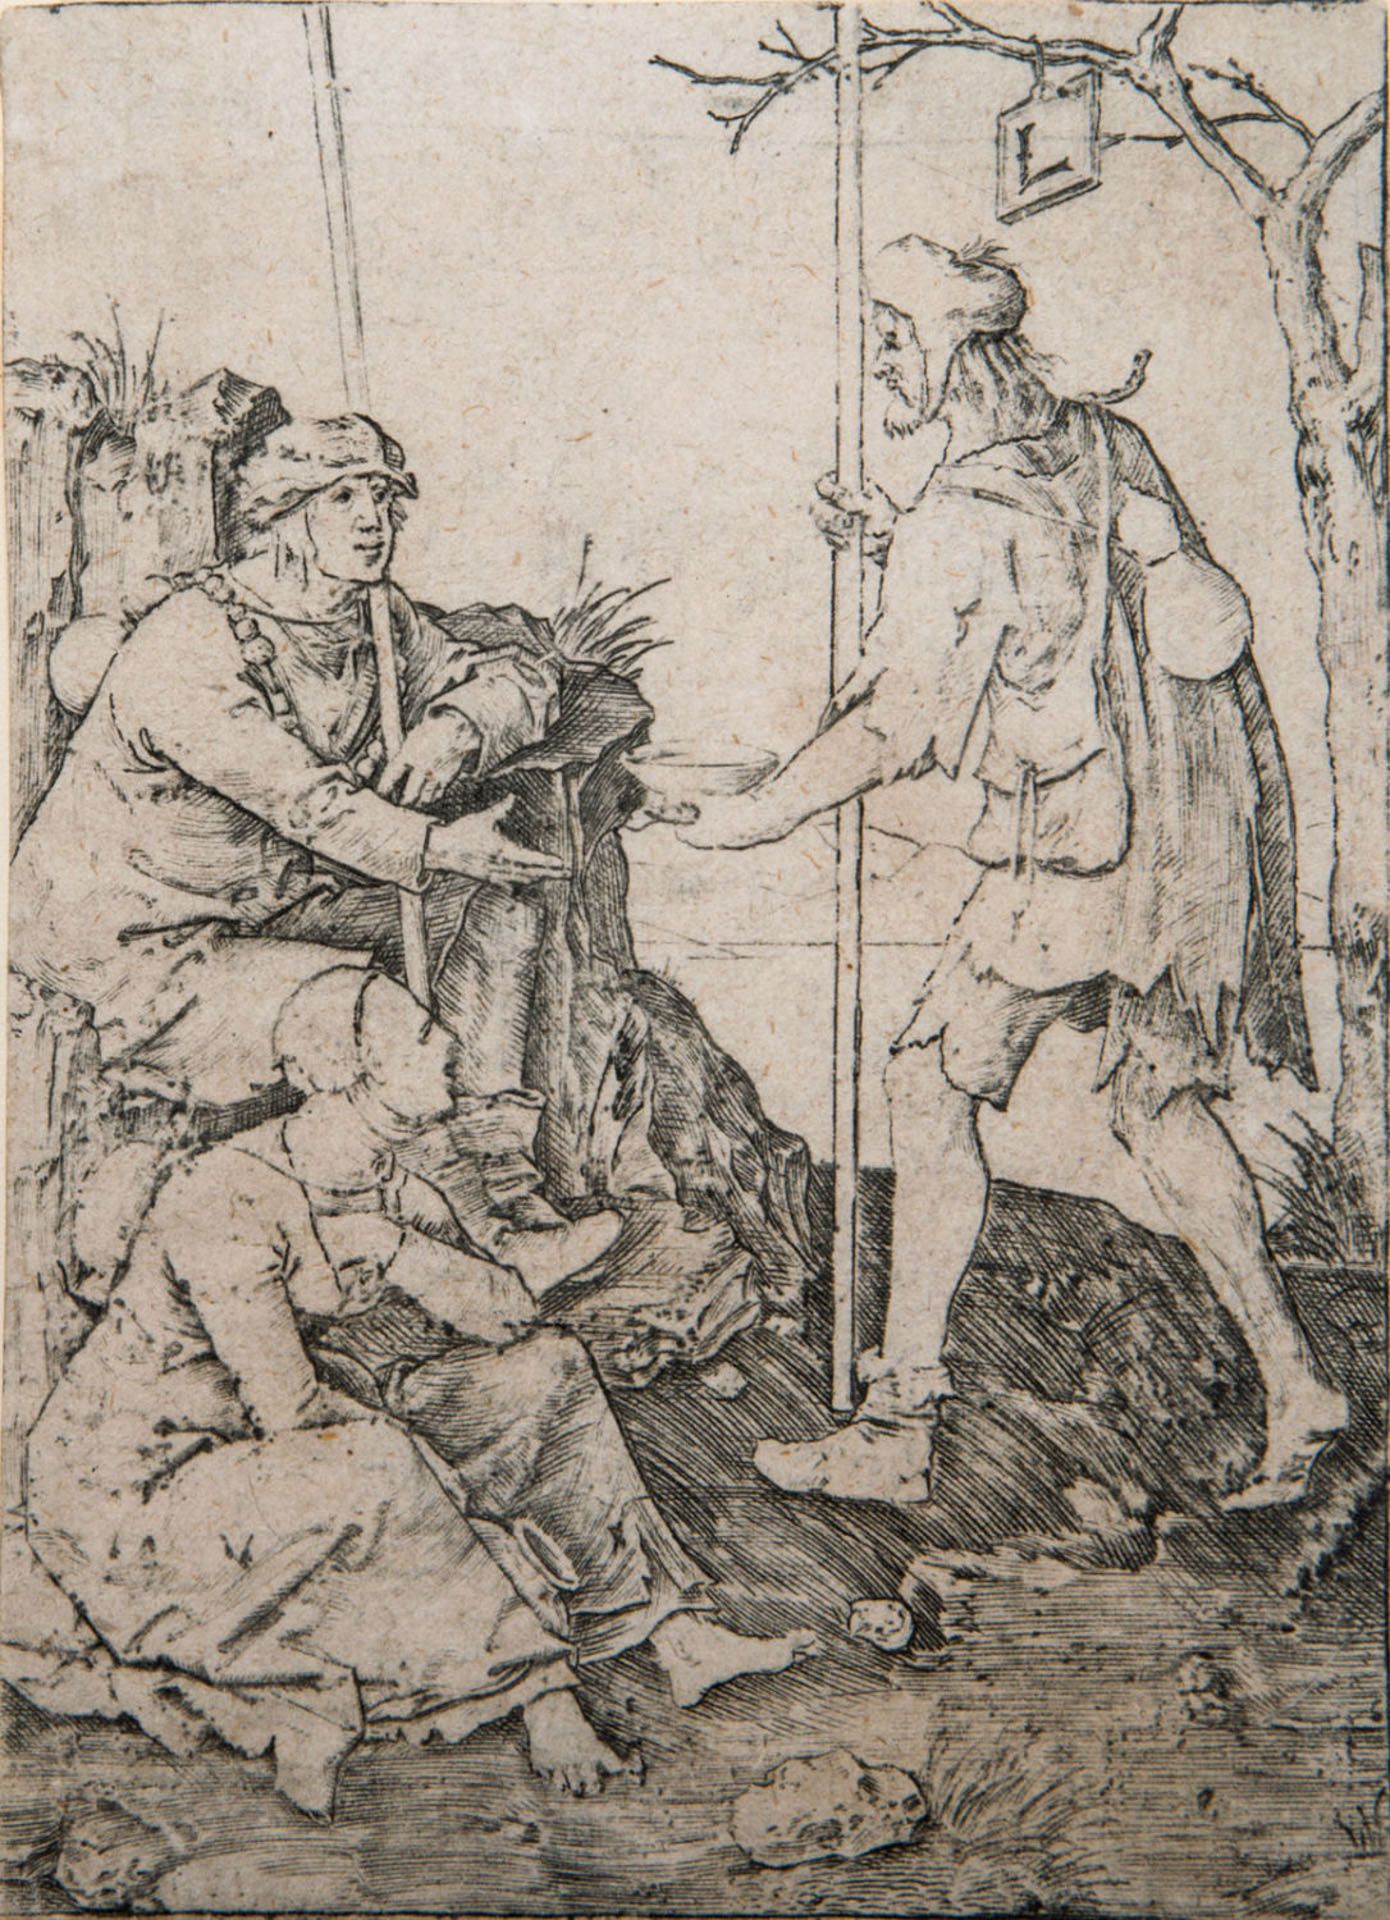 Lucas Van Leyden (1494-1533), The Beggars